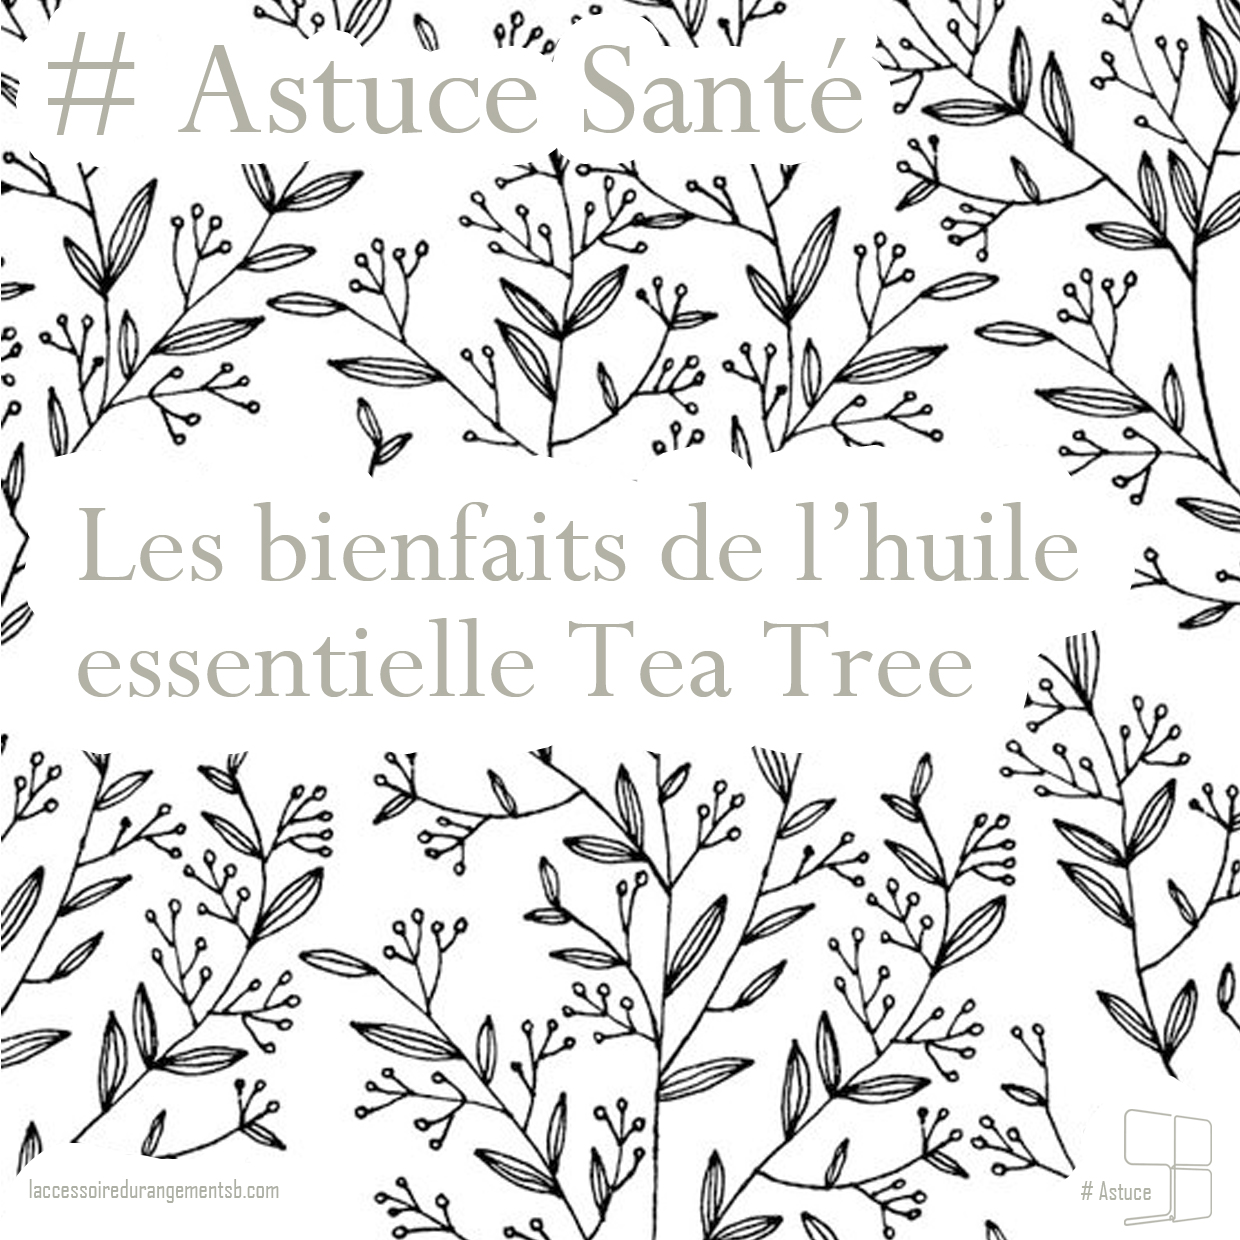 astuce_-sante_huile-essentielle-tea-tree